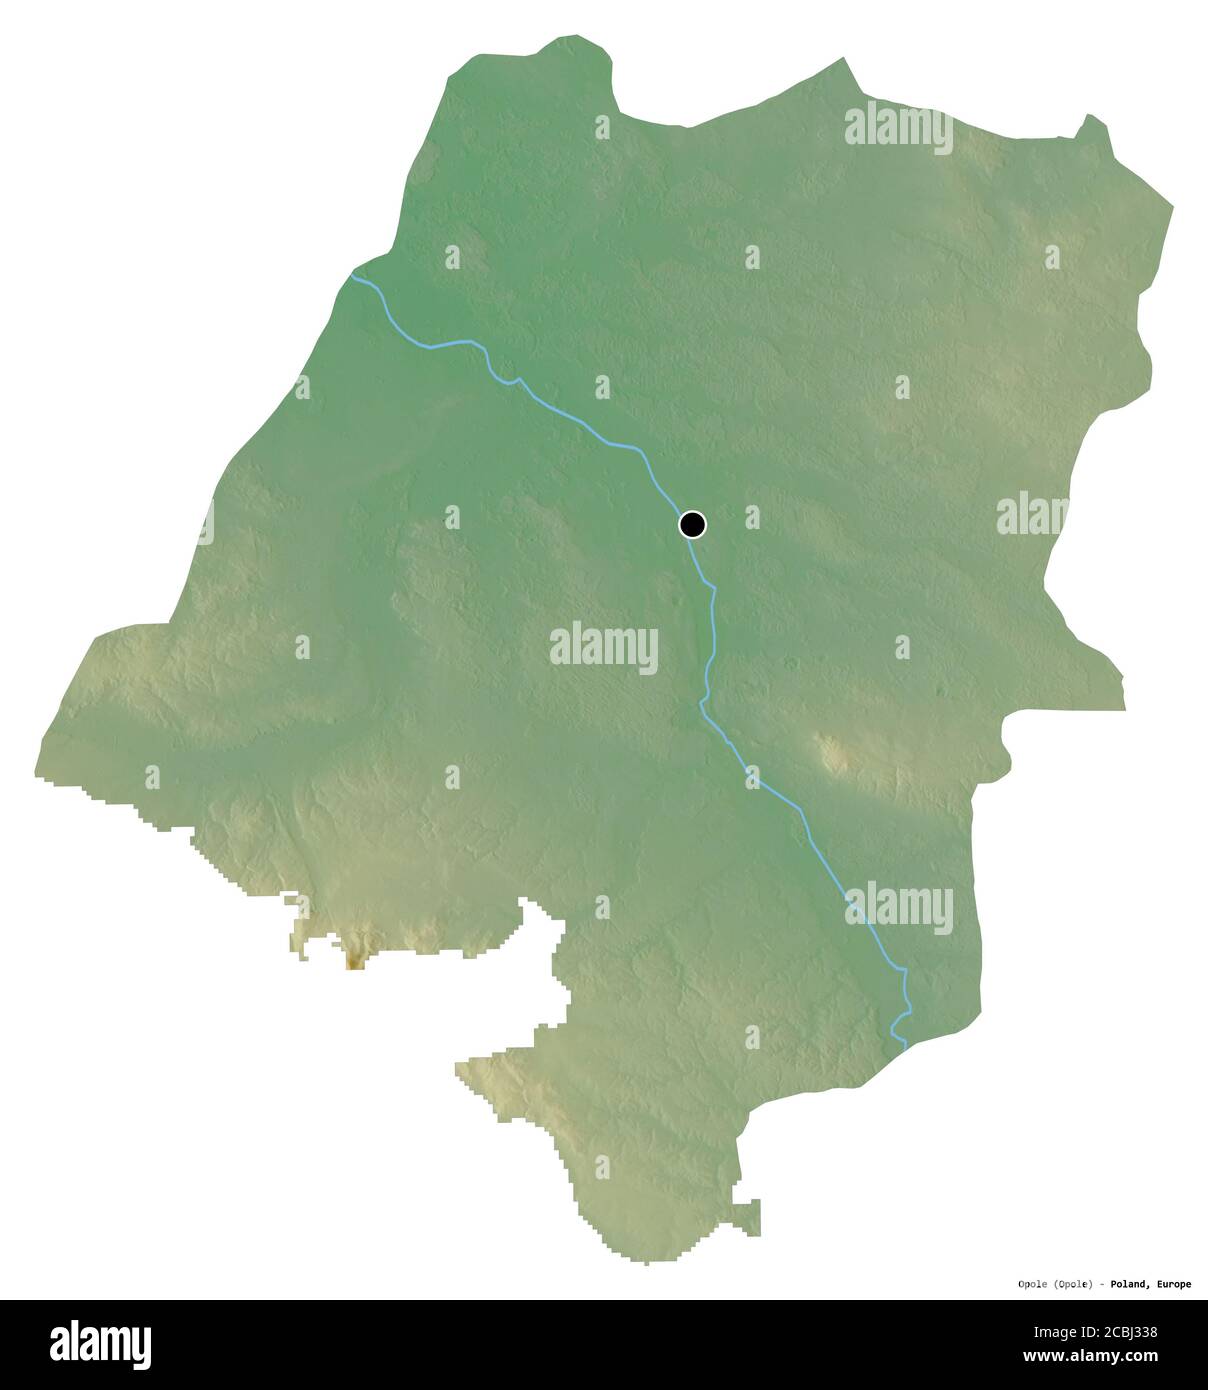 Forme d'Opole, voïvodeship de Pologne, avec sa capitale isolée sur fond blanc. Carte topographique de relief. Rendu 3D Banque D'Images